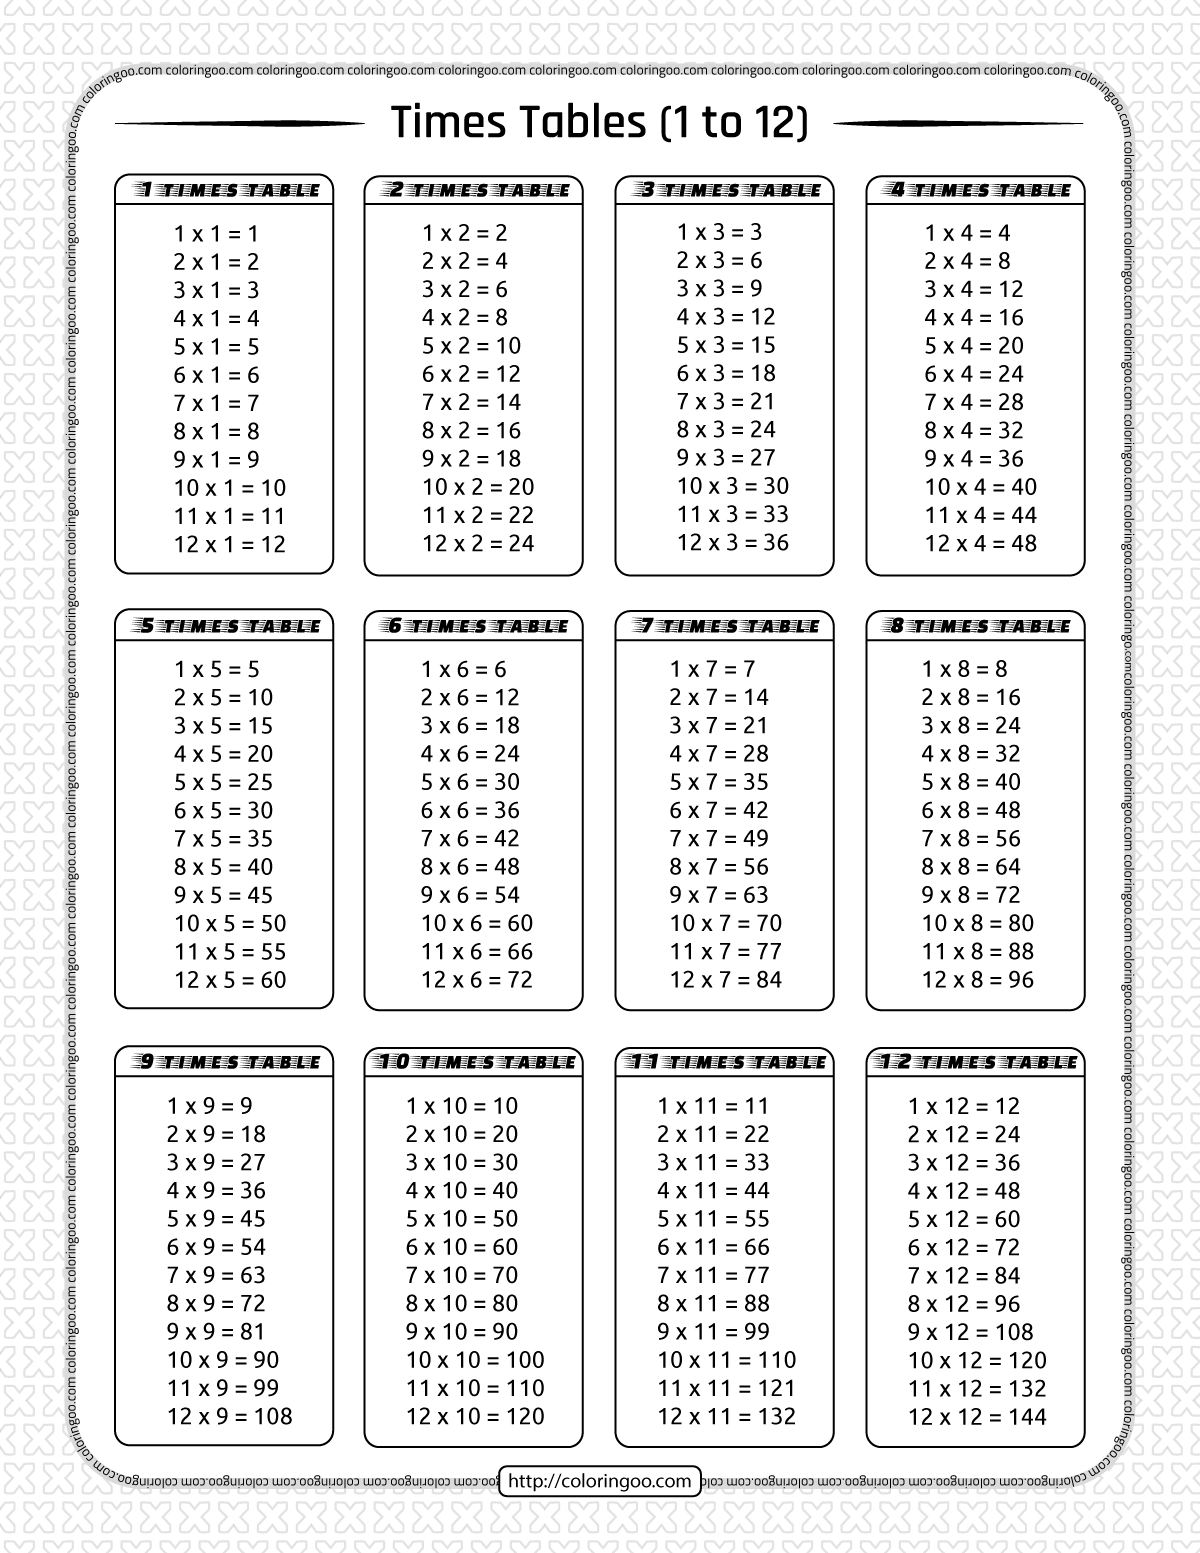 times-table-chart-printable-pdf-comicpole